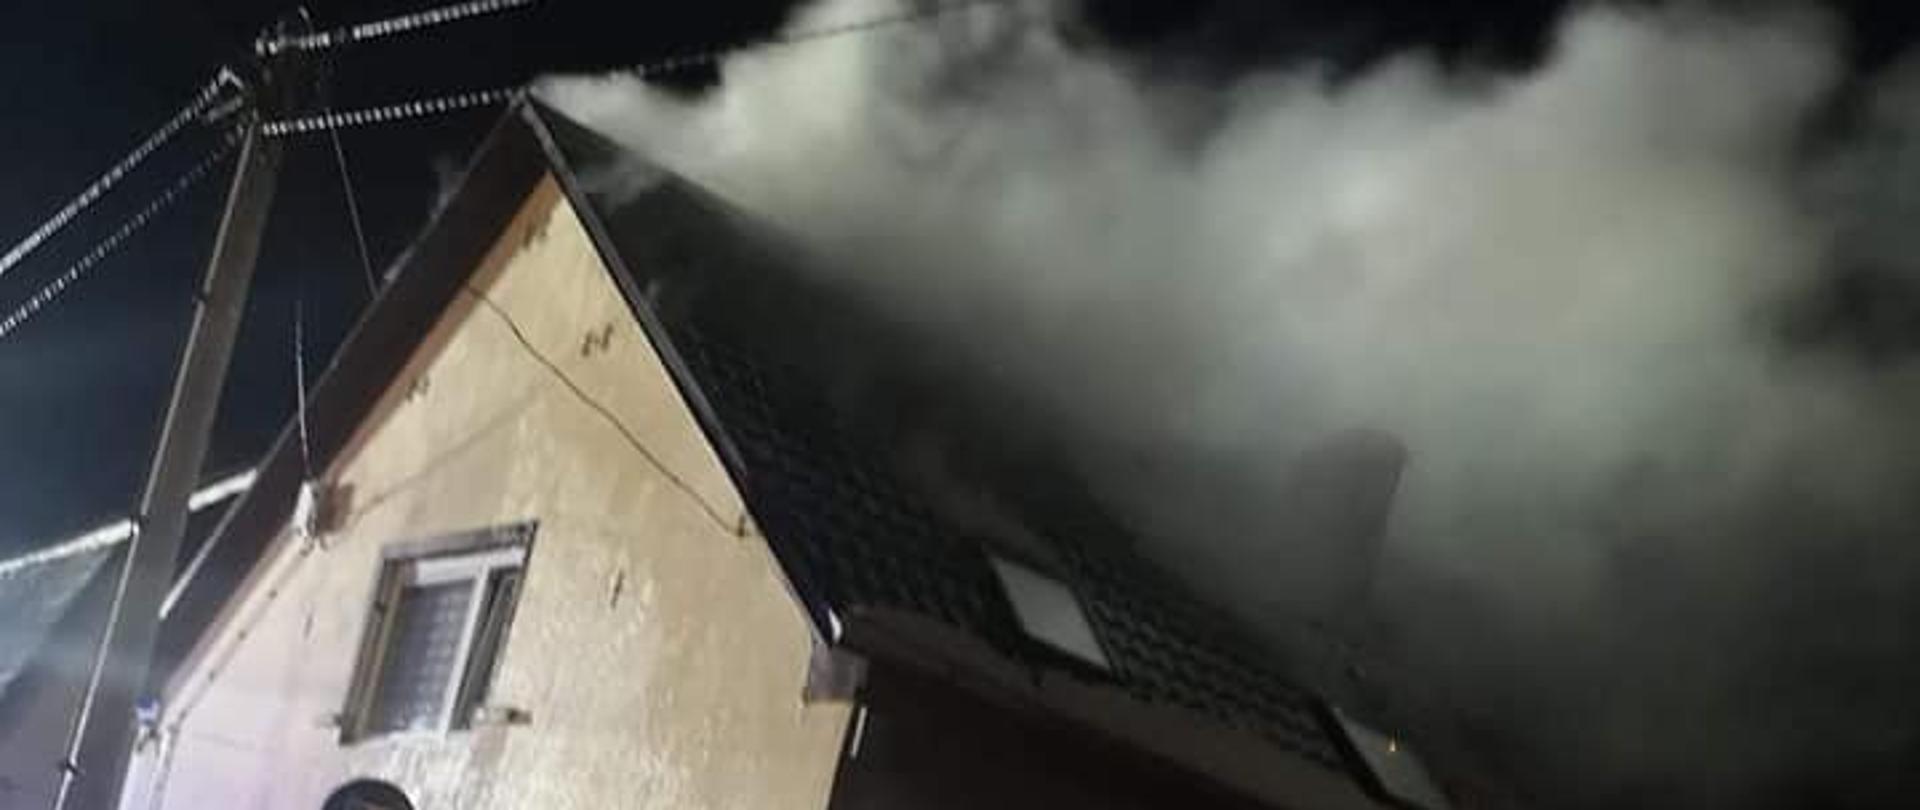 Wydobywający się dym z poddasza budynku jednorodzinnego ok. godz. 05.40. Na miejscu jest OSP Przytoczna.